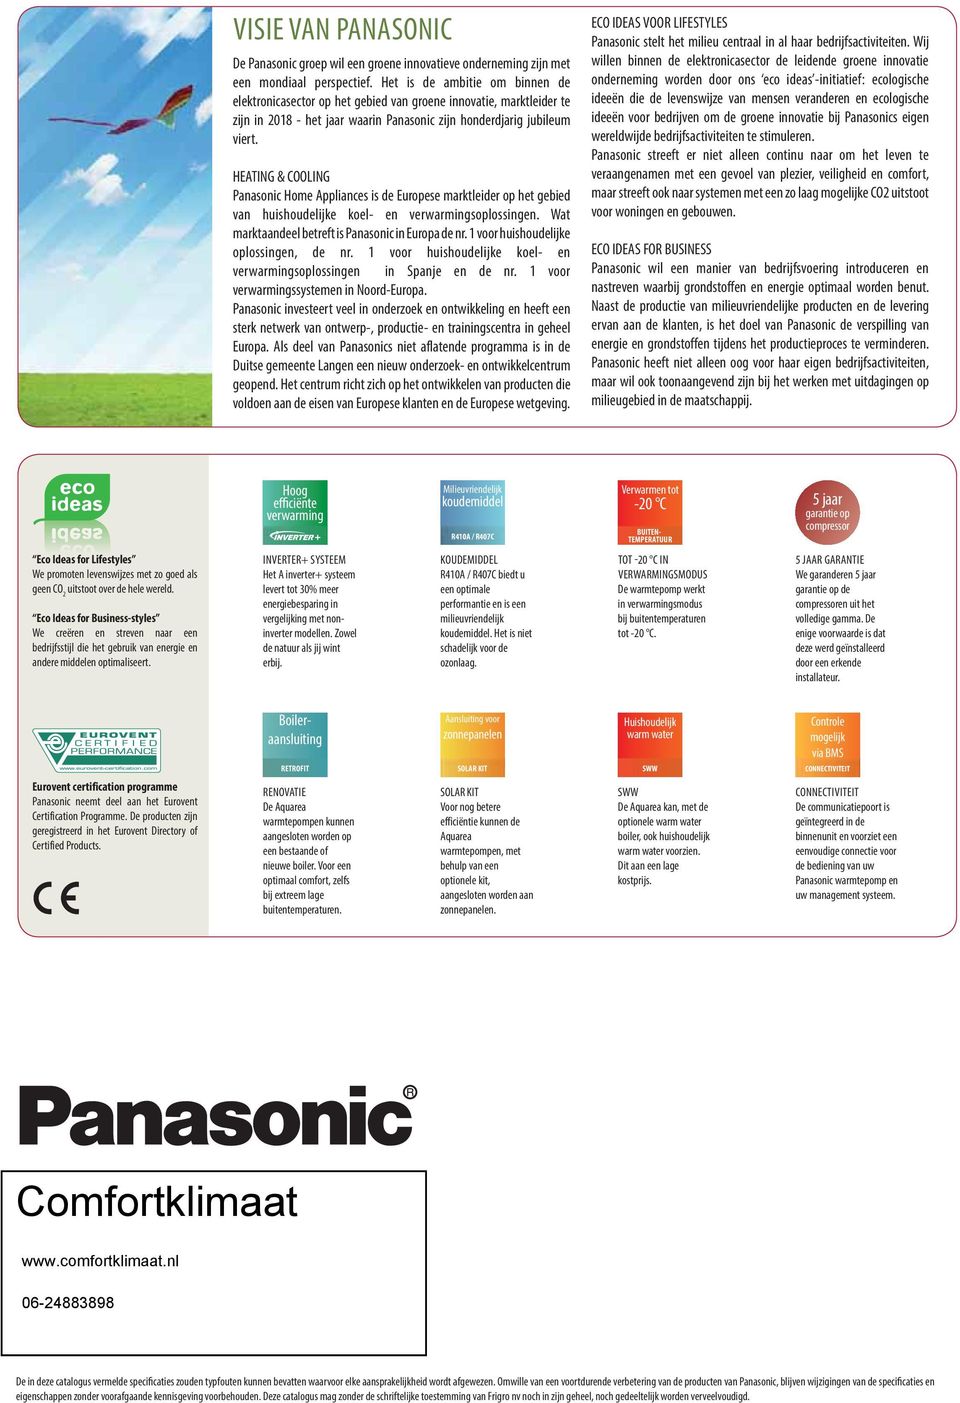 HEATING & COOLING Panasonic Home Appliances is de Europese marktleider op het gebied van huishoudelijke koel- en verwarmingsoplossingen. Wat marktaandeel betreft is Panasonic in Europa de nr.